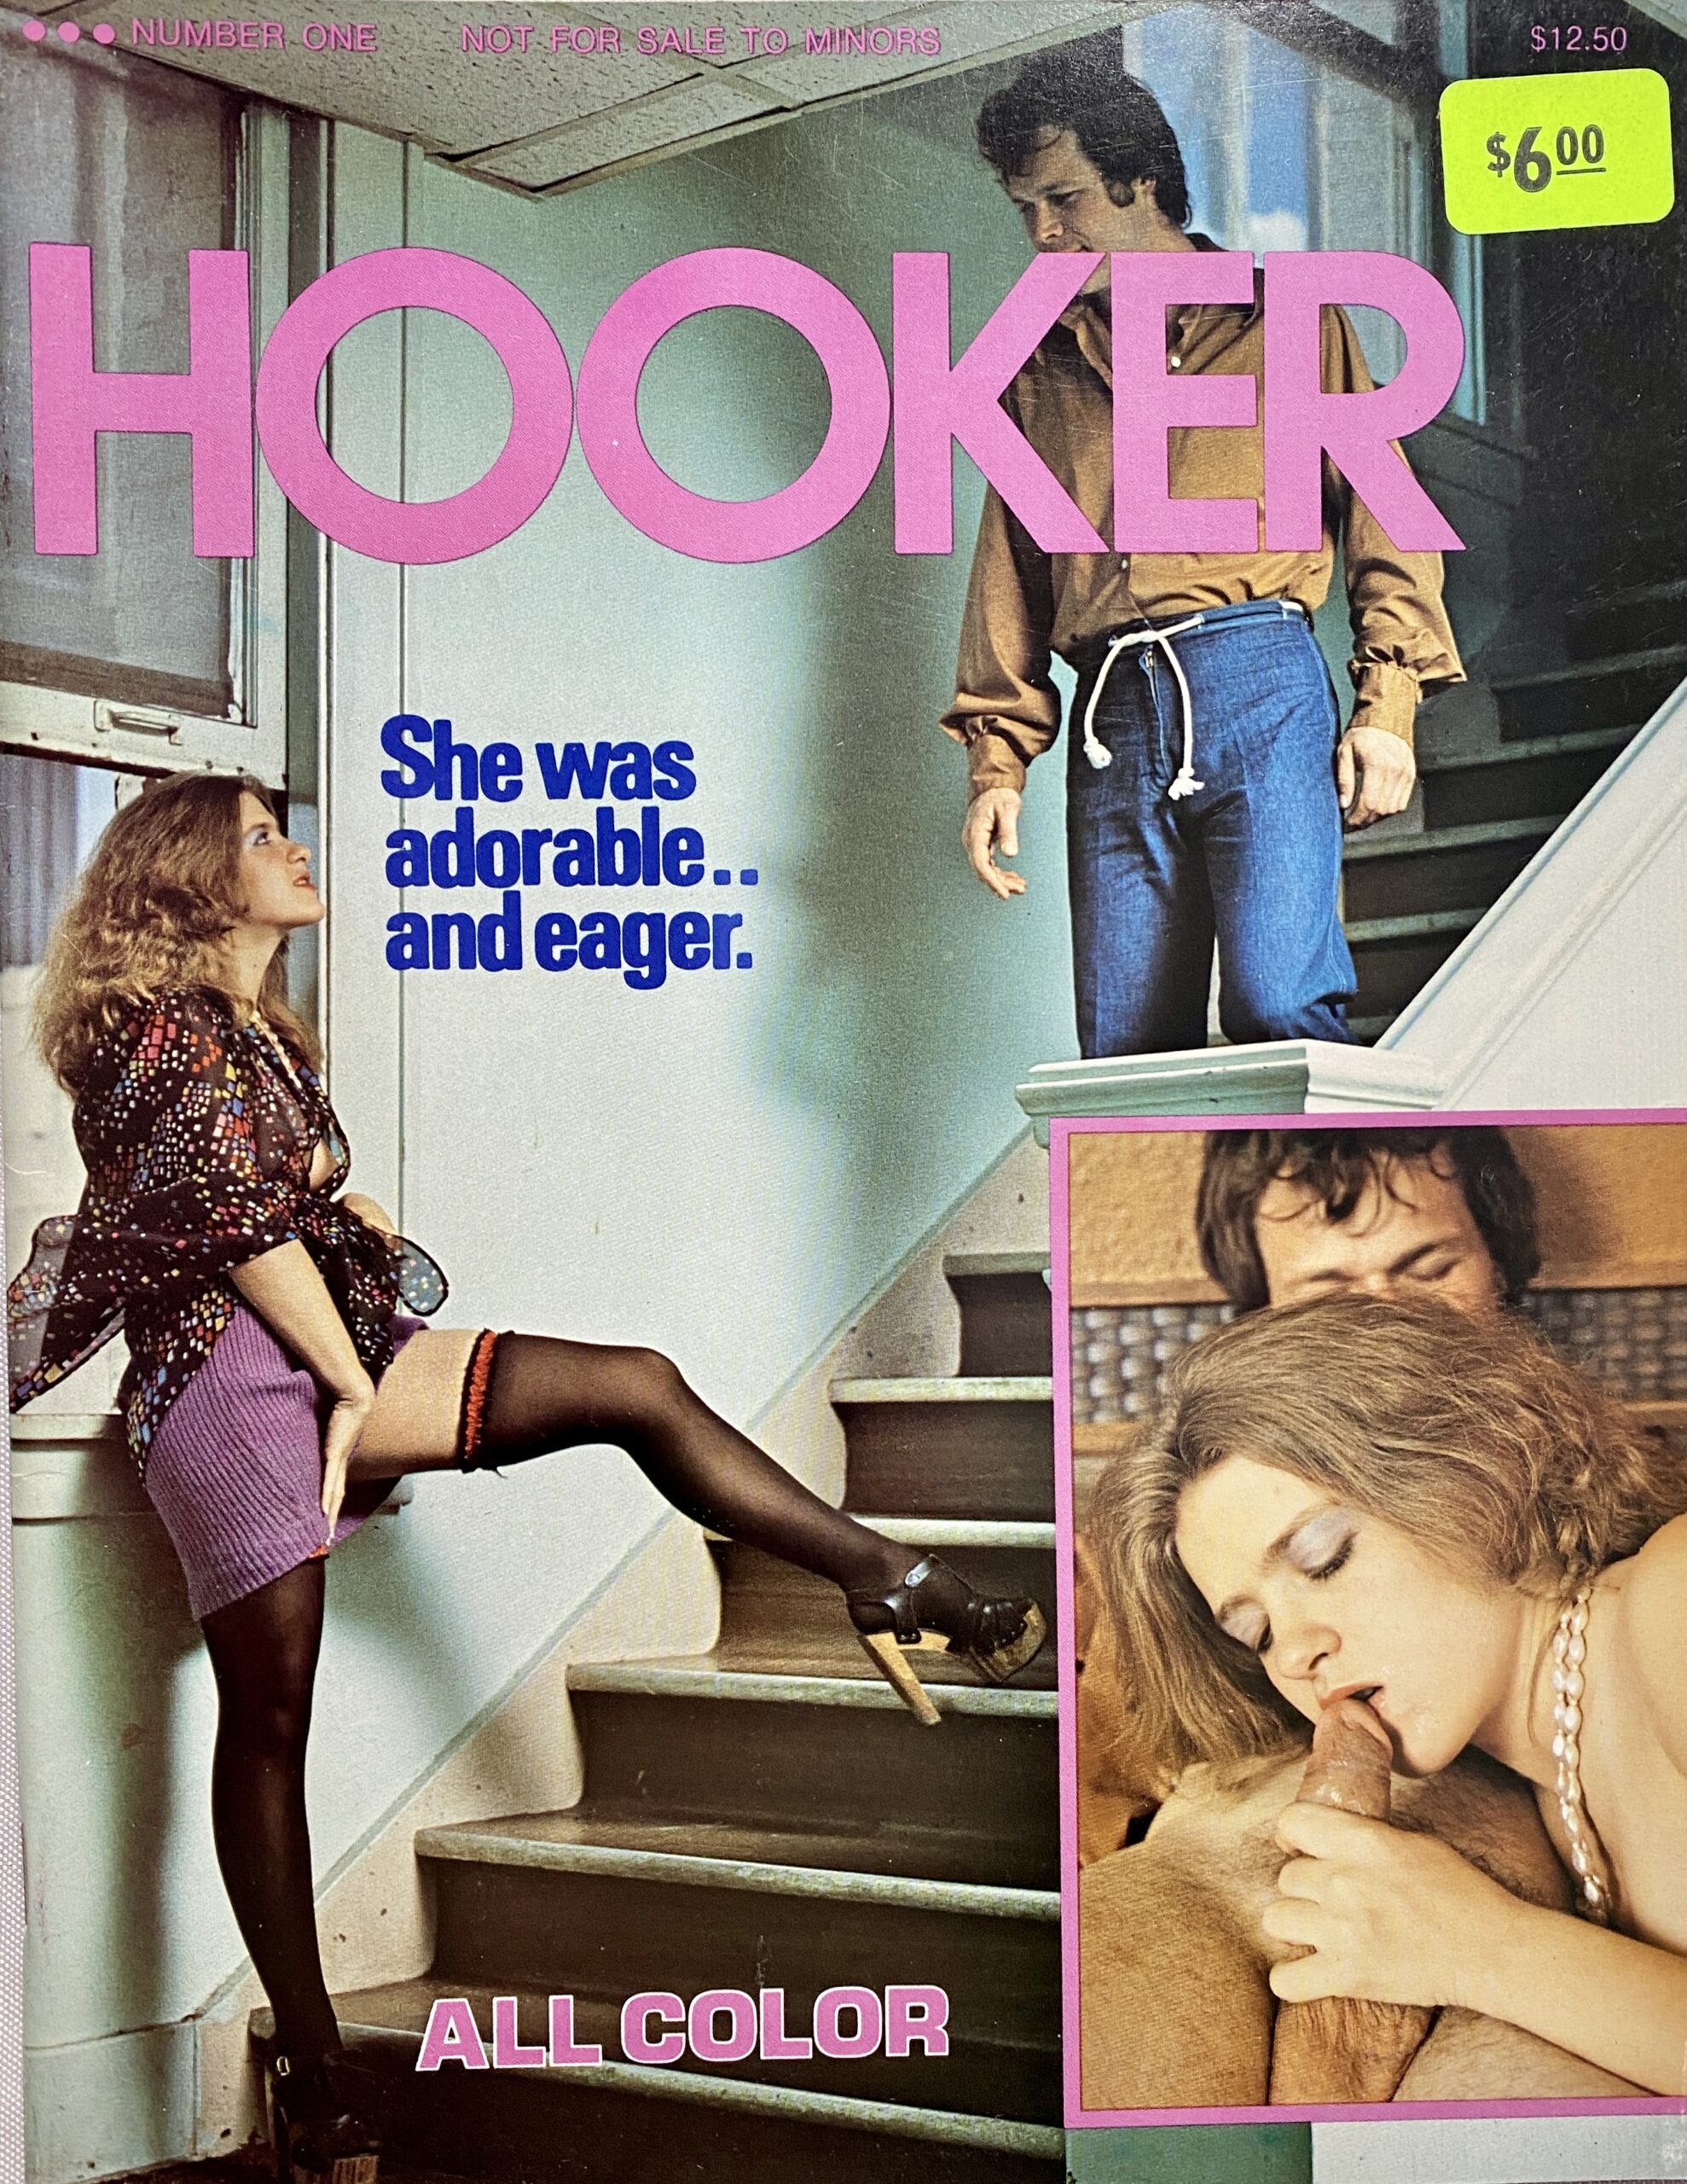 Hooker No. 1 80'S Adult Parliament Mens XXX Magazine - Vintage